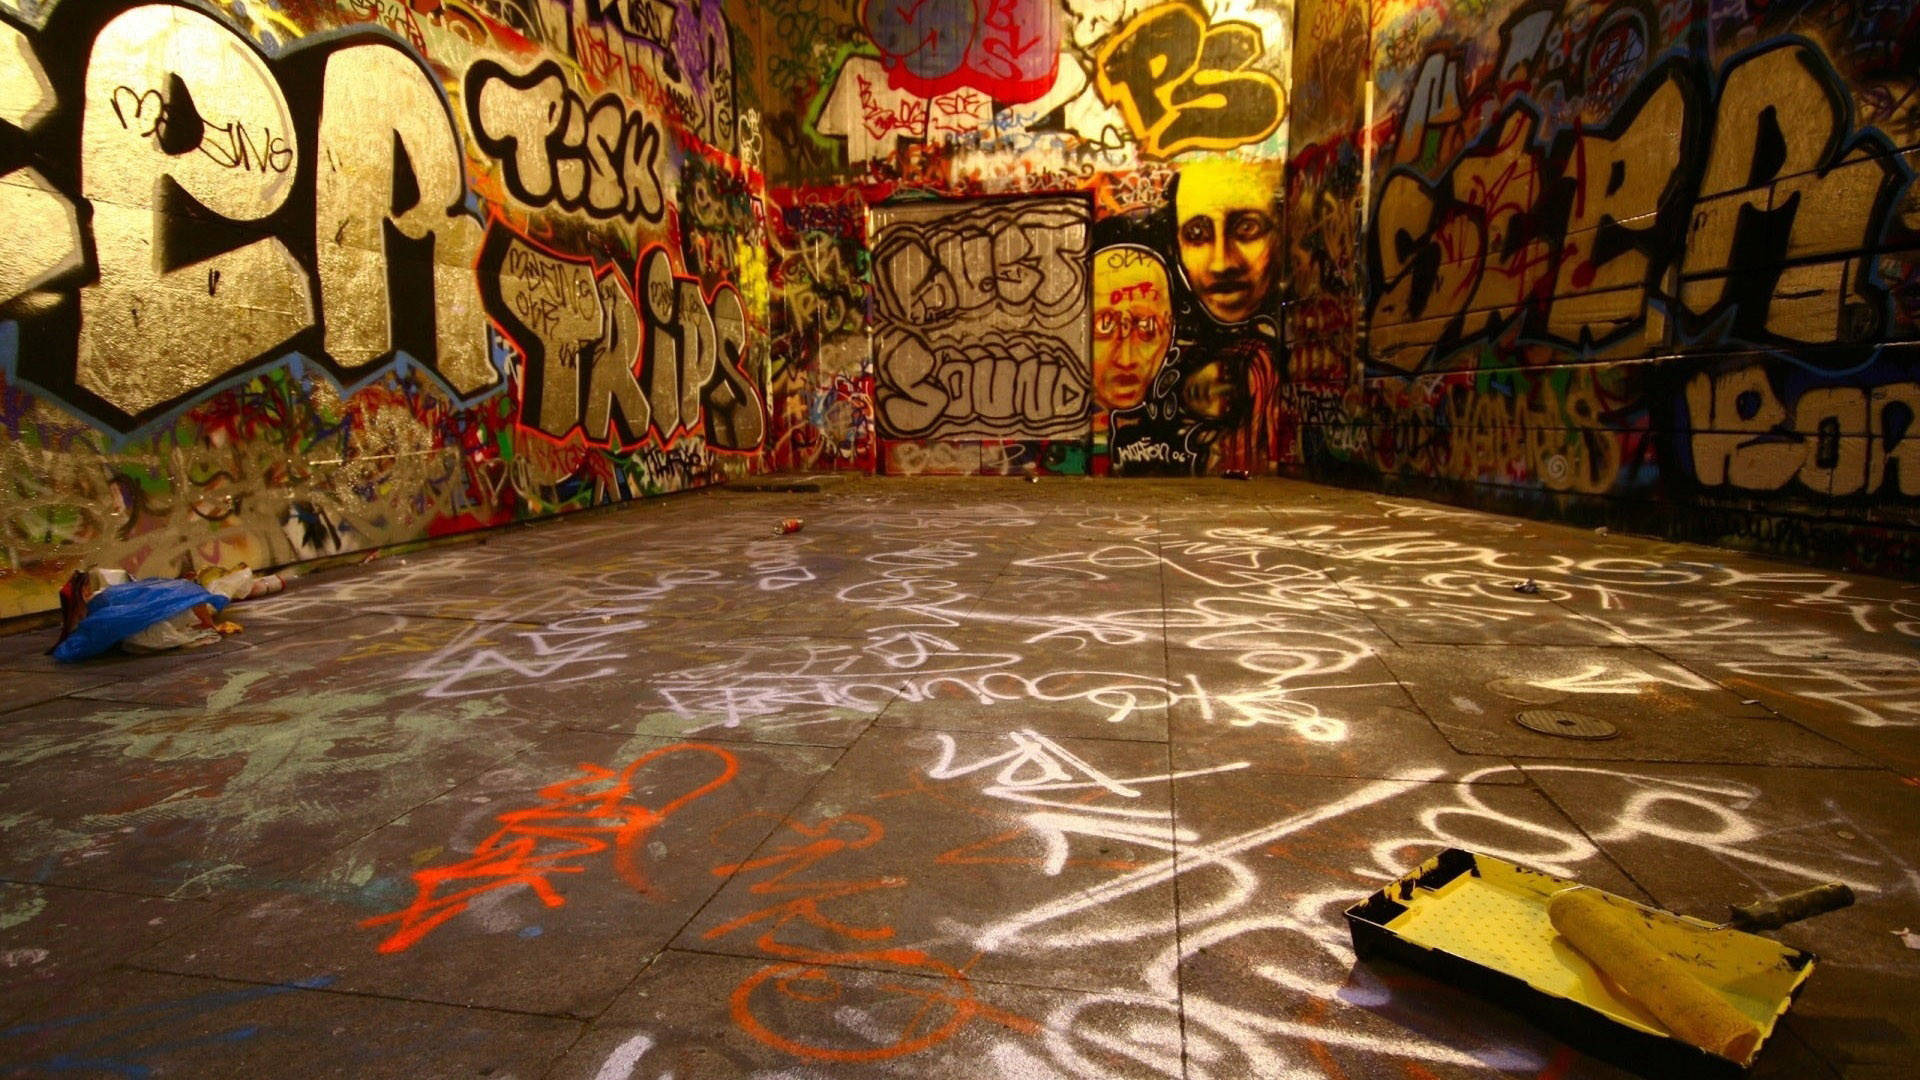 Hd Art Graffiti På Væg Wallpaper